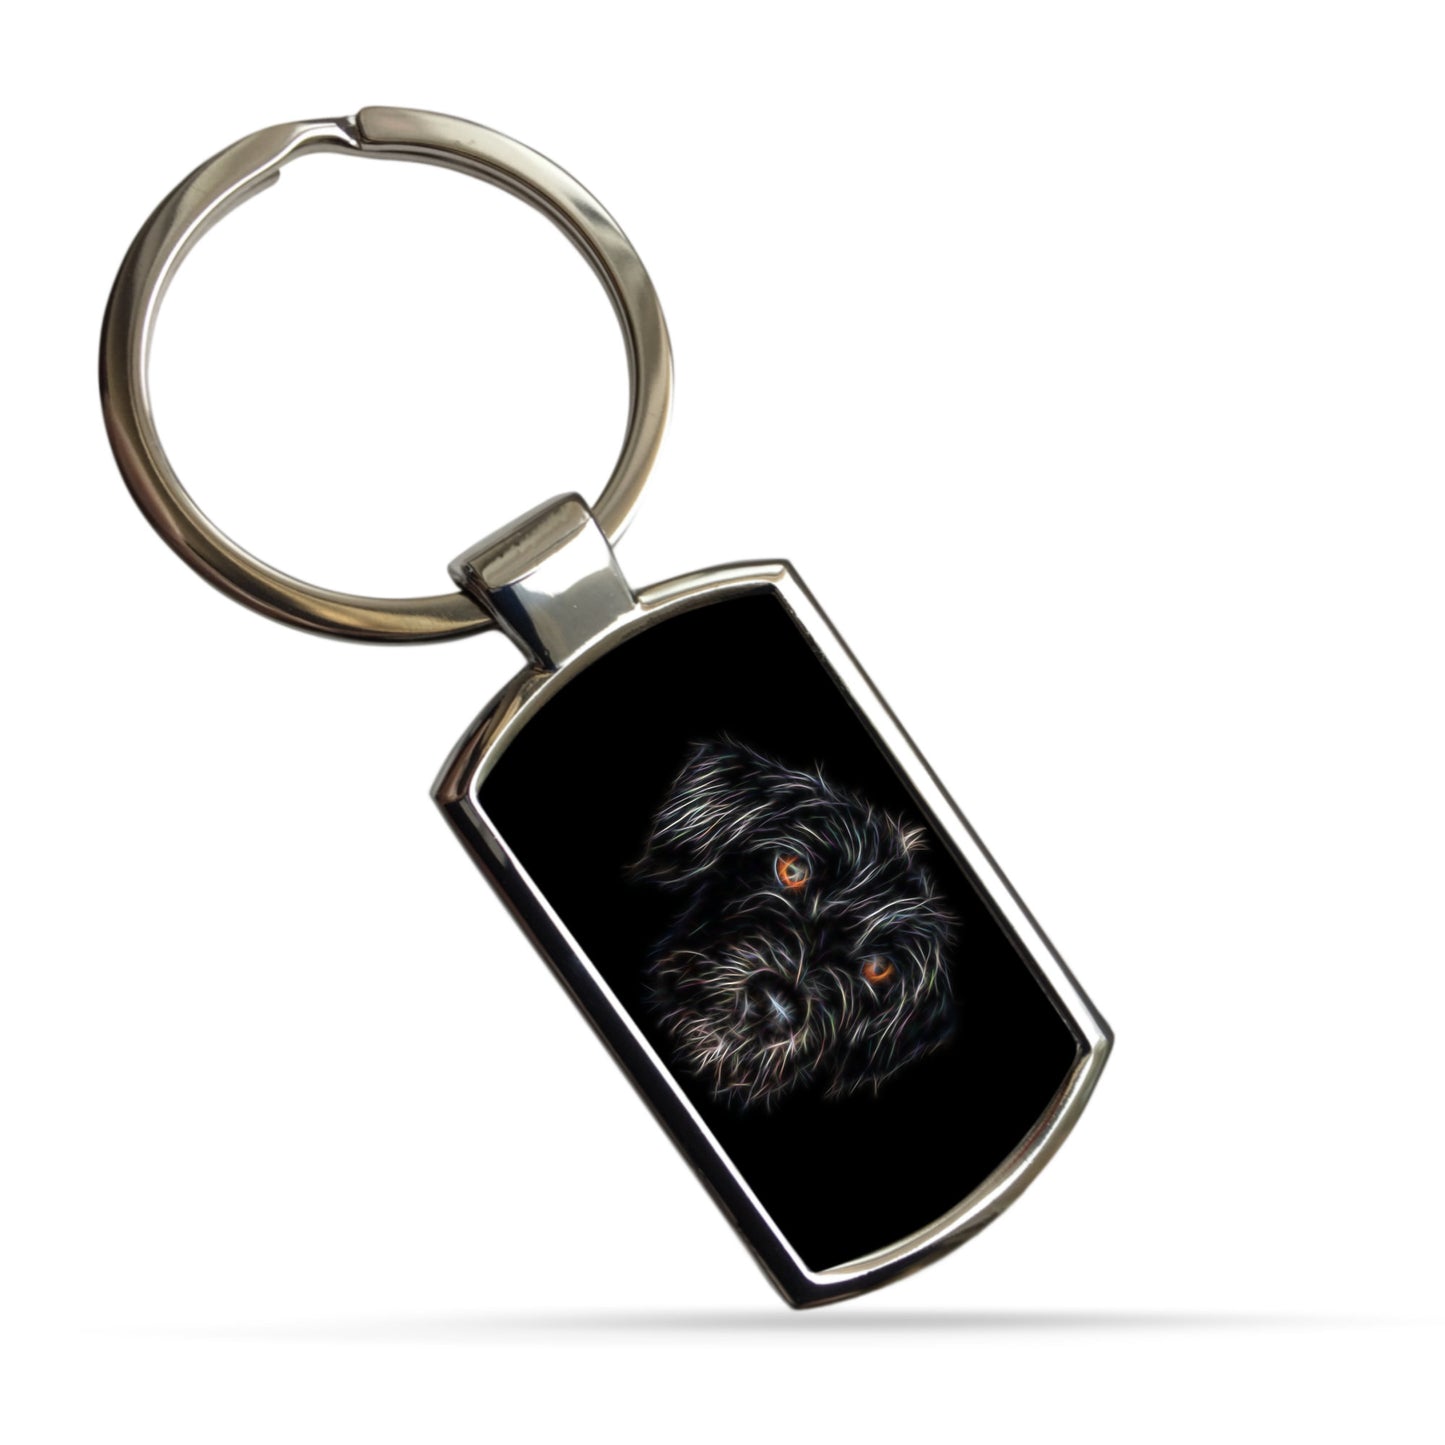 Black Jackapoo Dog Keychain with Fractal Art Design